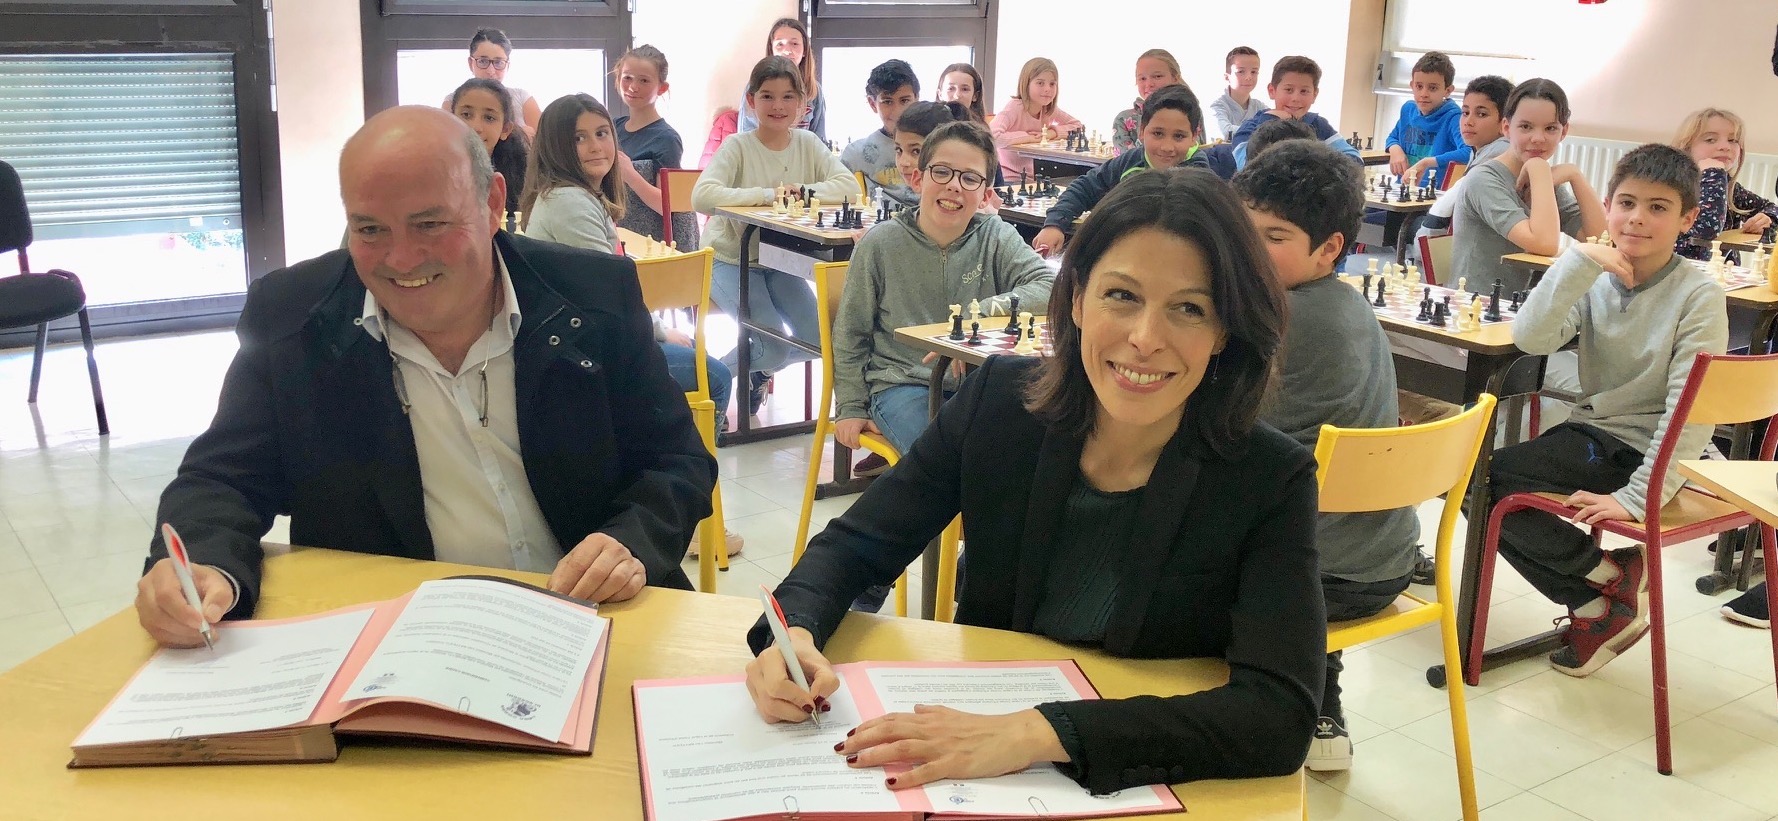 La Rectrice de Corse : "Grâce à ce partenariat nous sommes la première Académie pour l'apprentissage des échecs ! " 